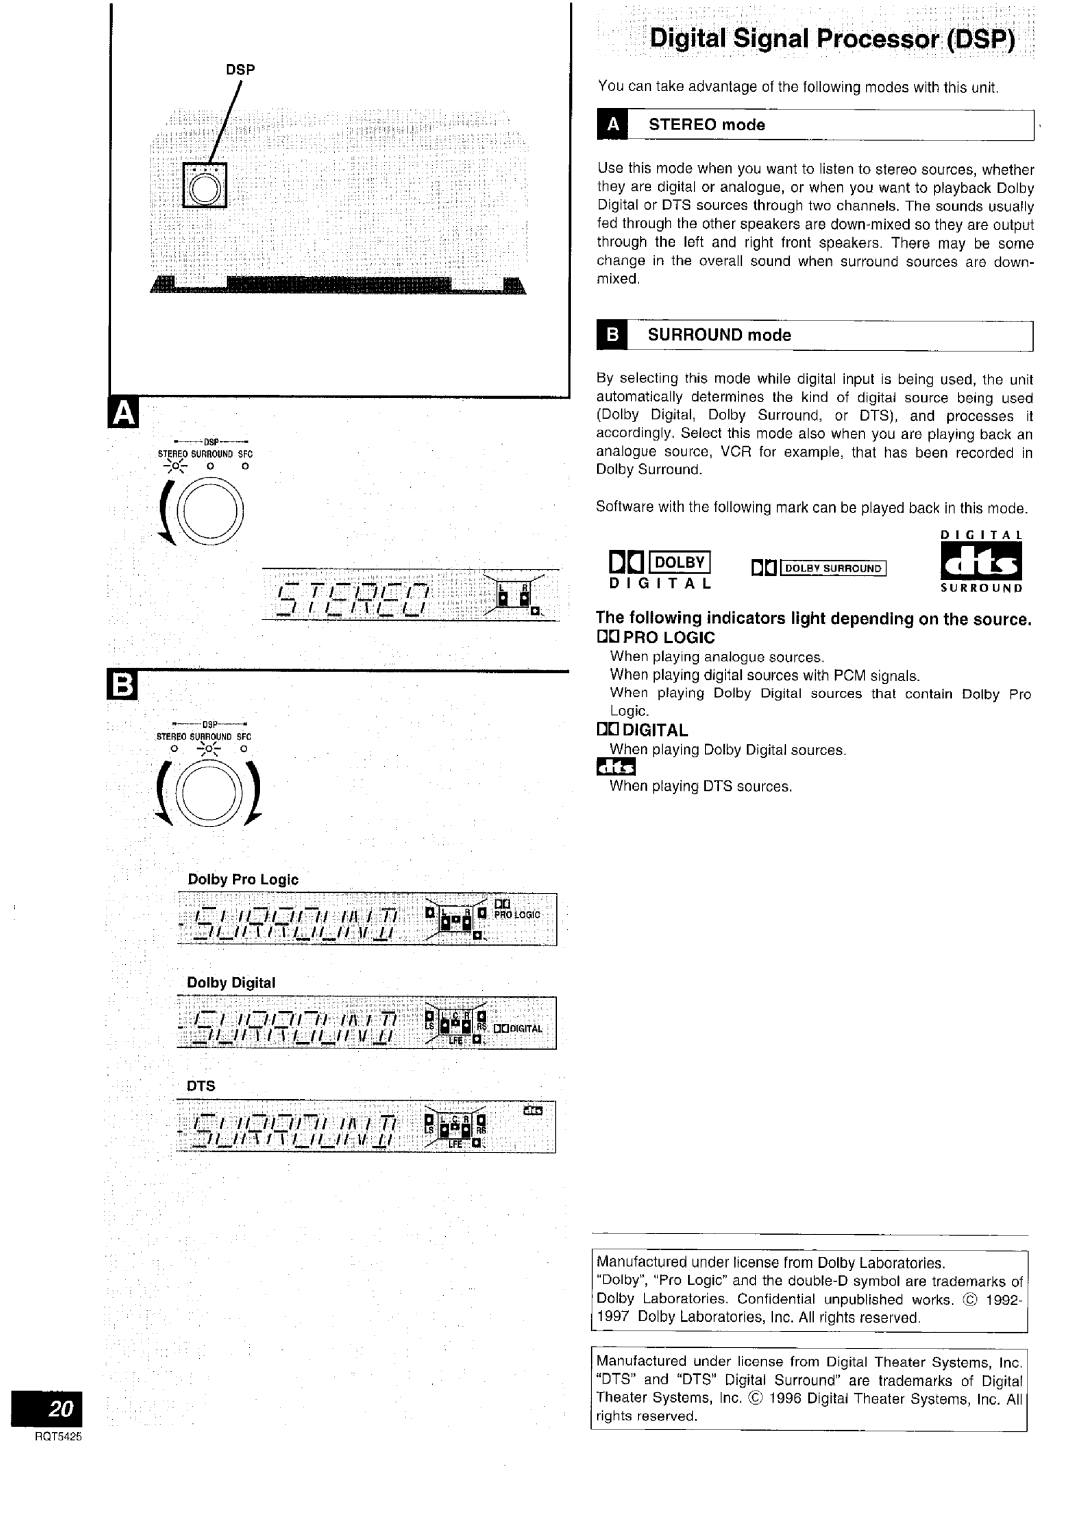 Panasonic SA-DX940 manual 